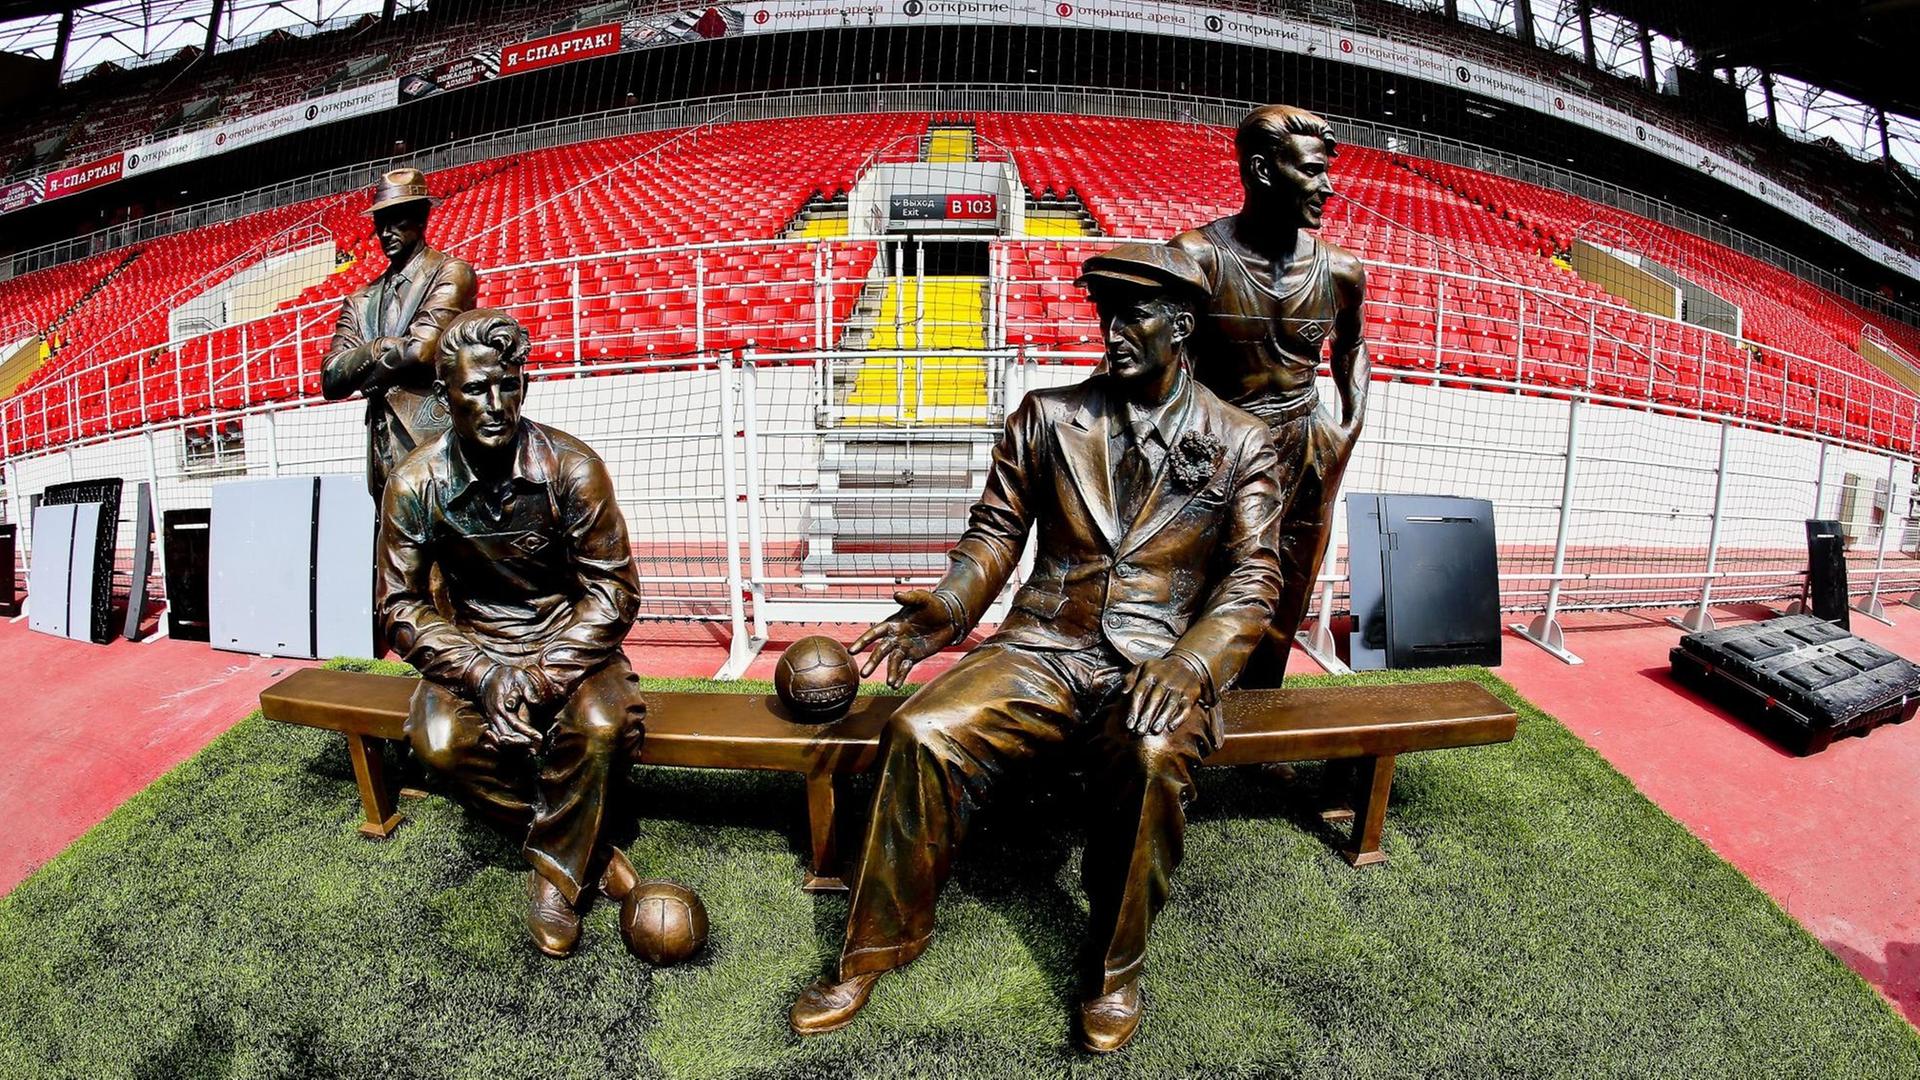 Denkmal der Starostin-Brüder im Spartak-Stadion in Moskau.